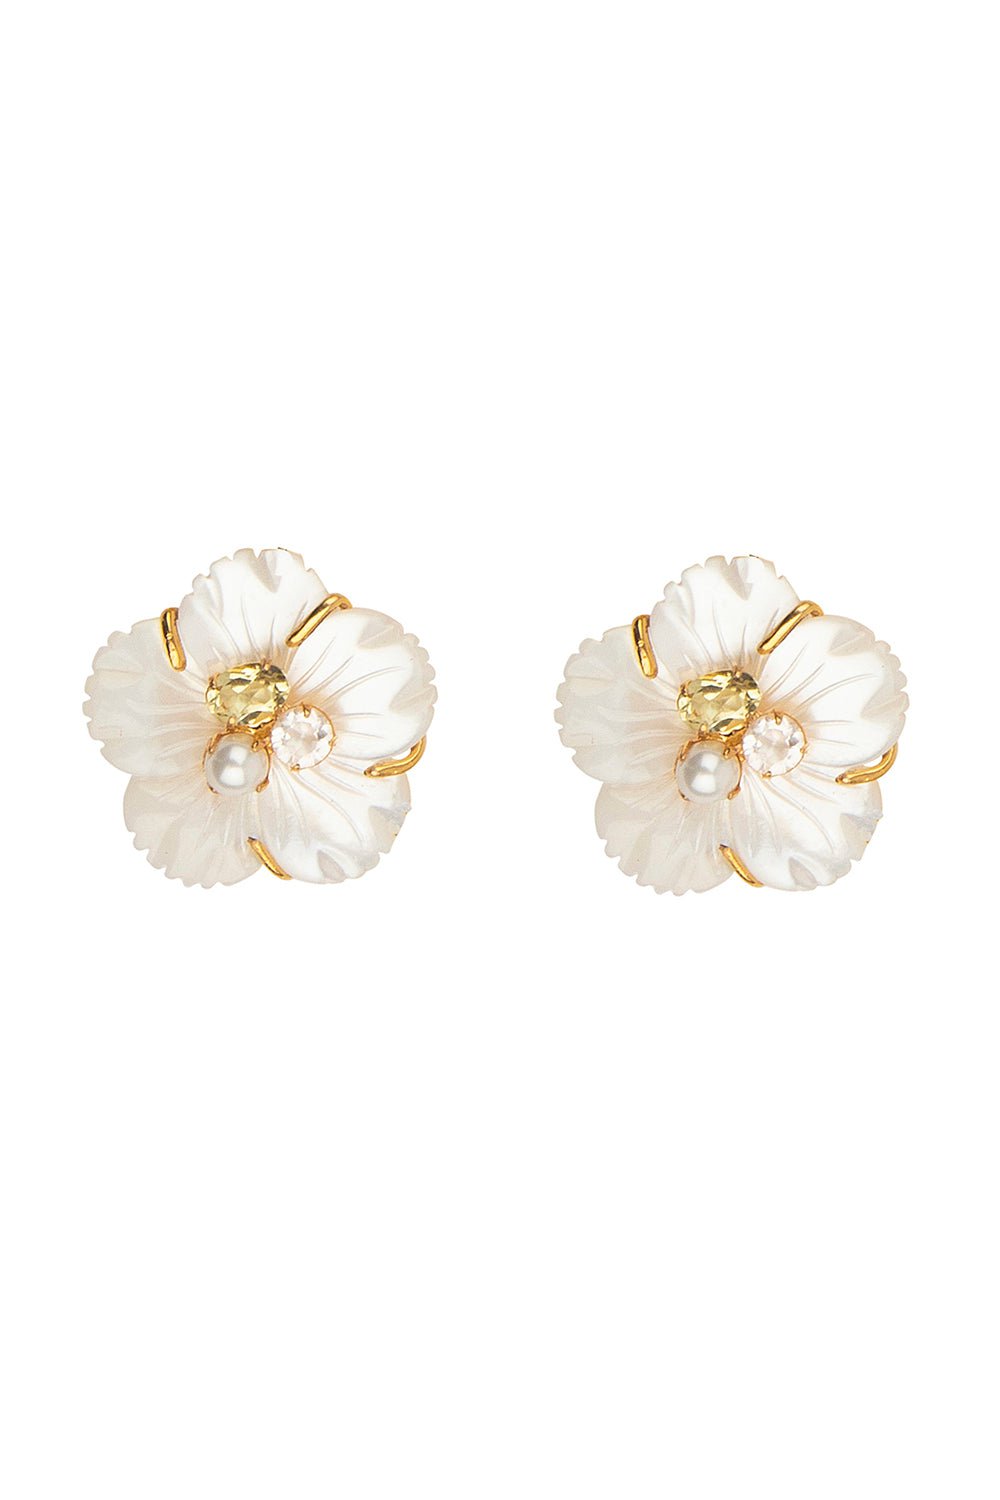 Lemon Quartz Flower Stud Earrings JEWELRYBOUTIQUEEARRING BOUNKIT JEWELRY   